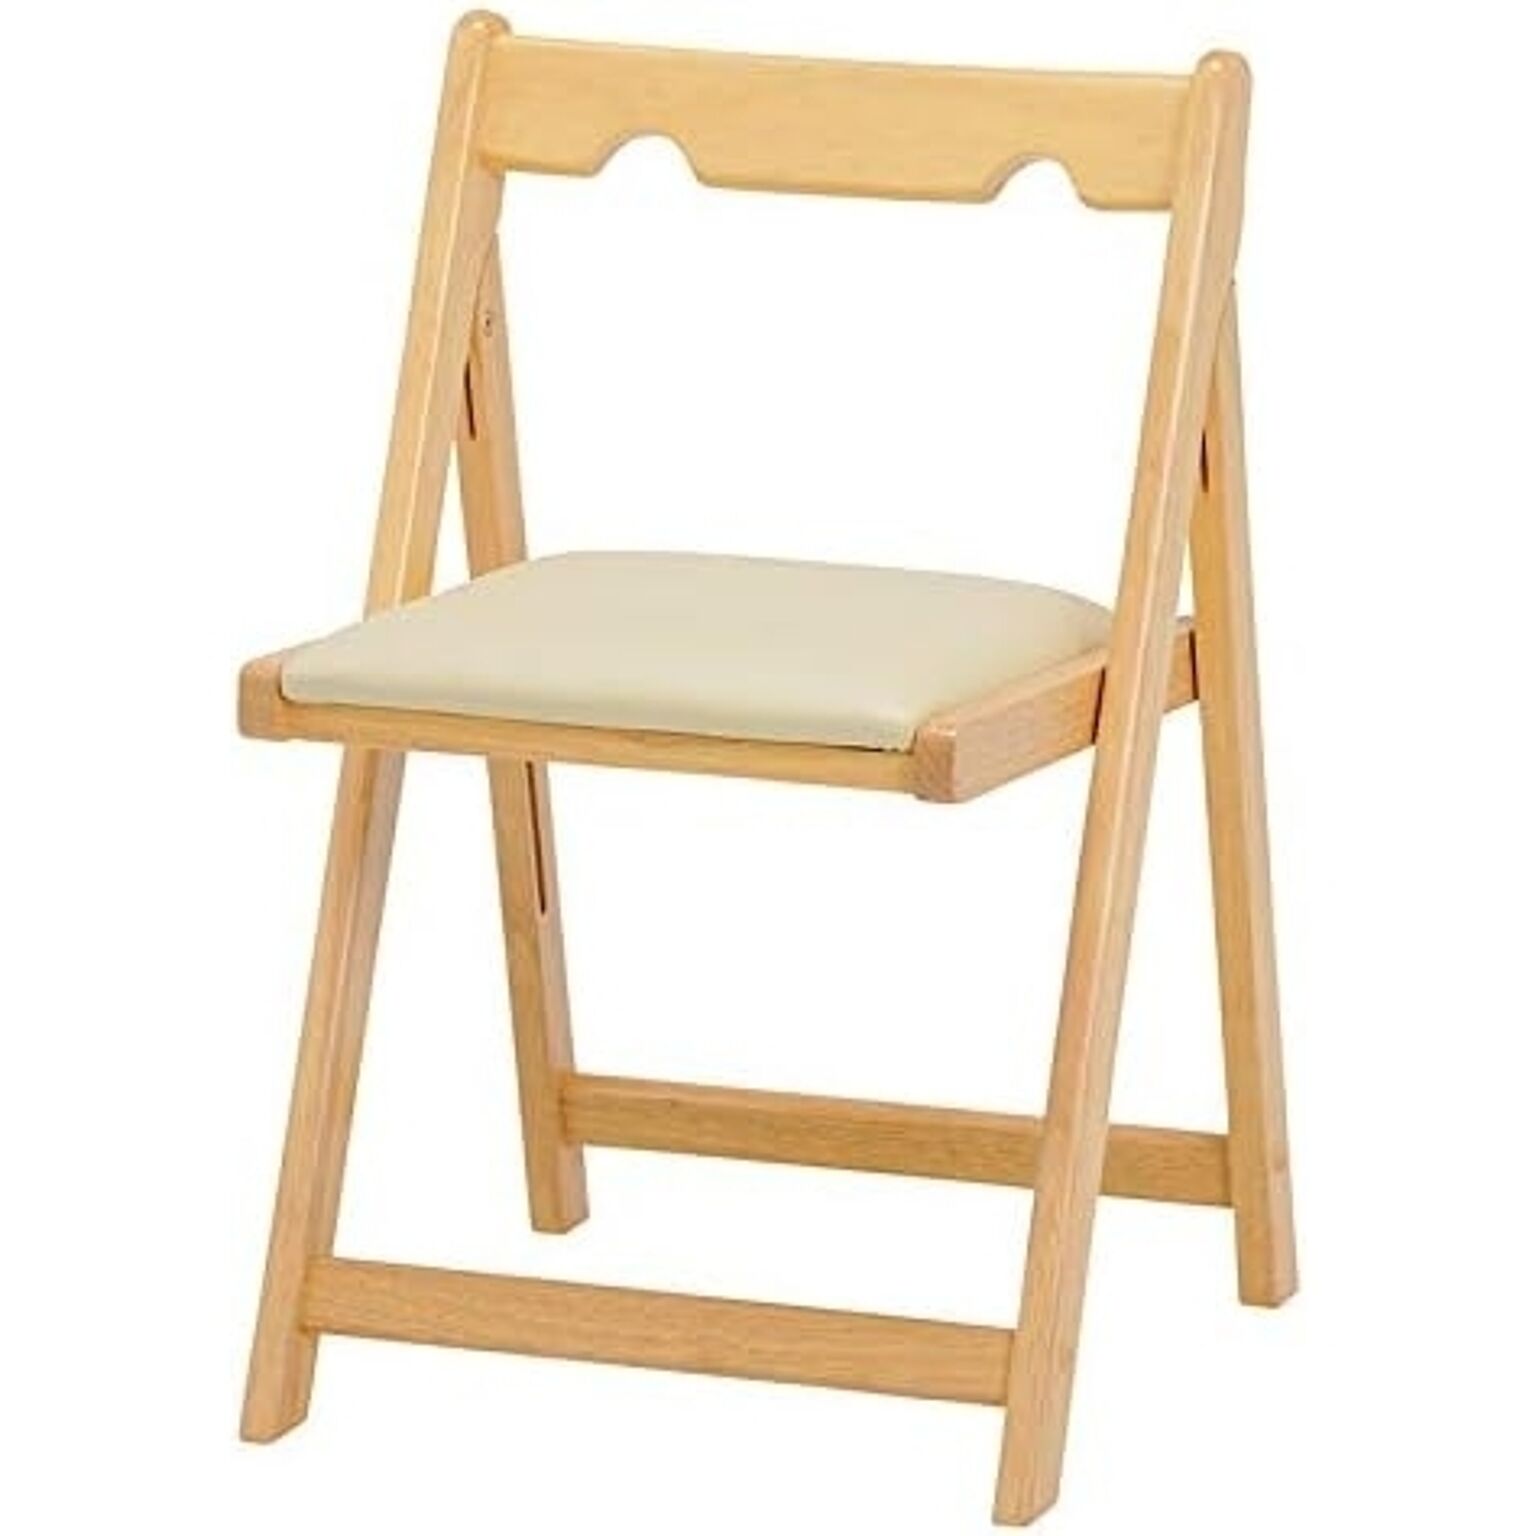 折りたたみチェア 木製 イス チェア チェアー 椅子 折りたたみ椅子